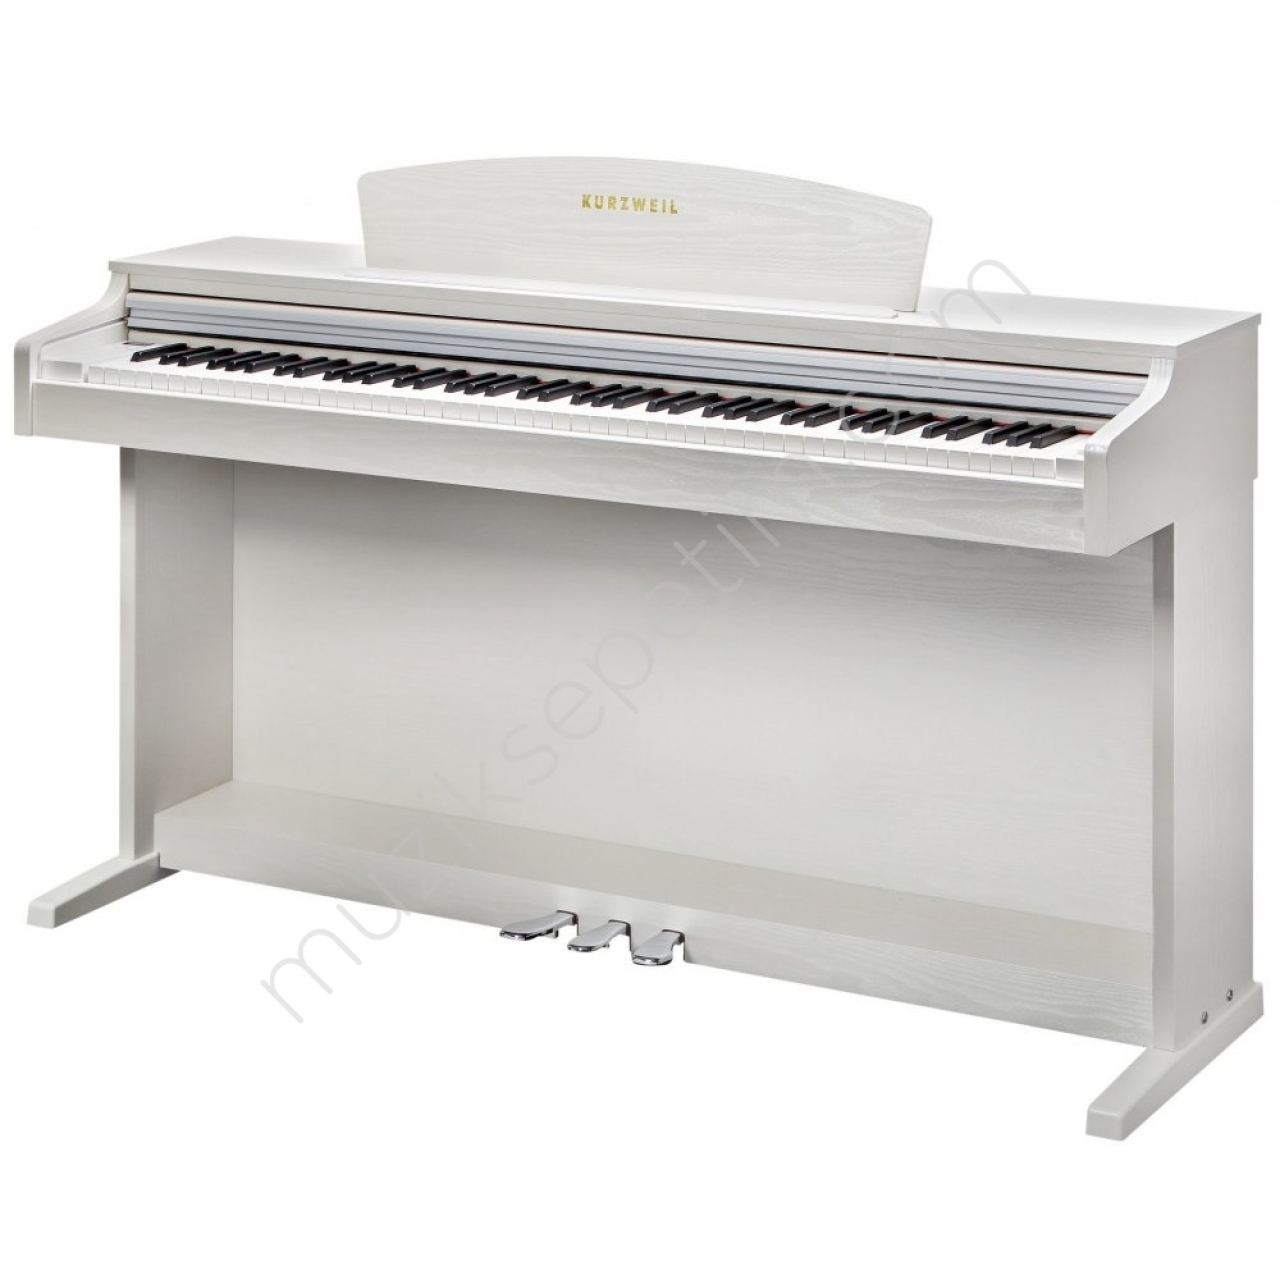 Kurzweil M115 Dijital Piyano - Beyaz